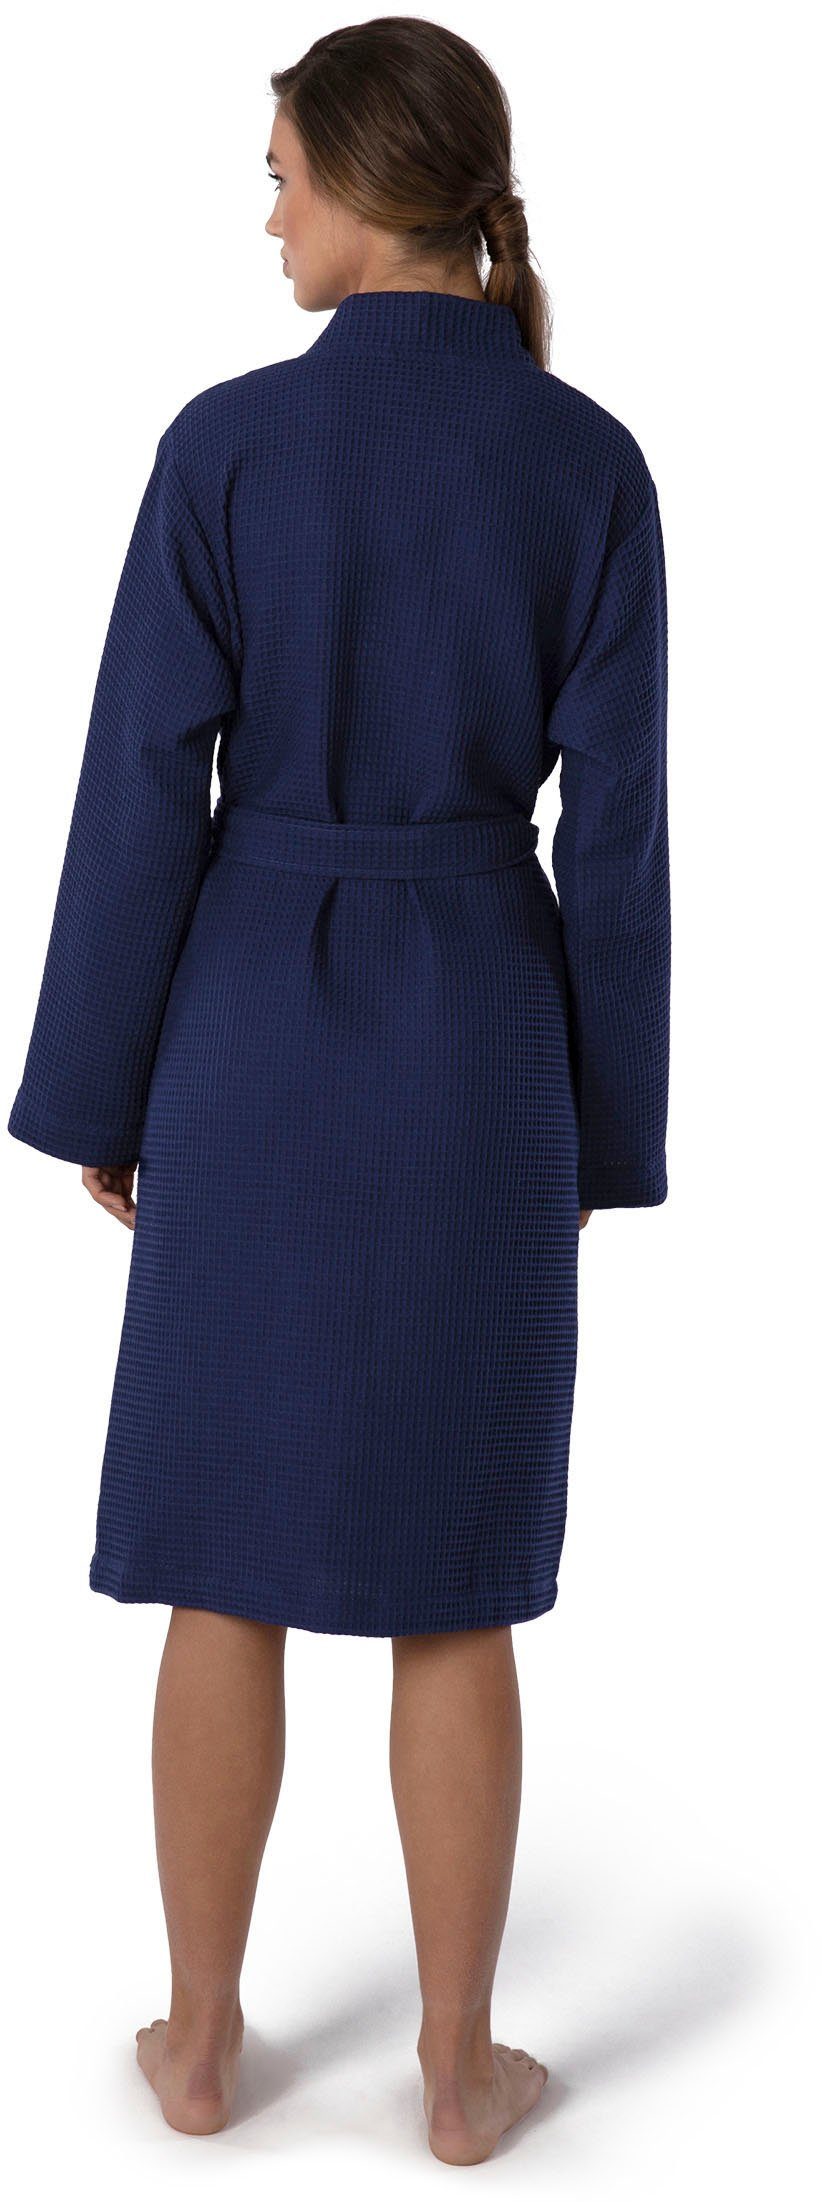 Möve Kimono Homewear, Kurzform, Piqué, dunkelblau Piquée-Oberfläche Kimono-Kragen, Gürtel